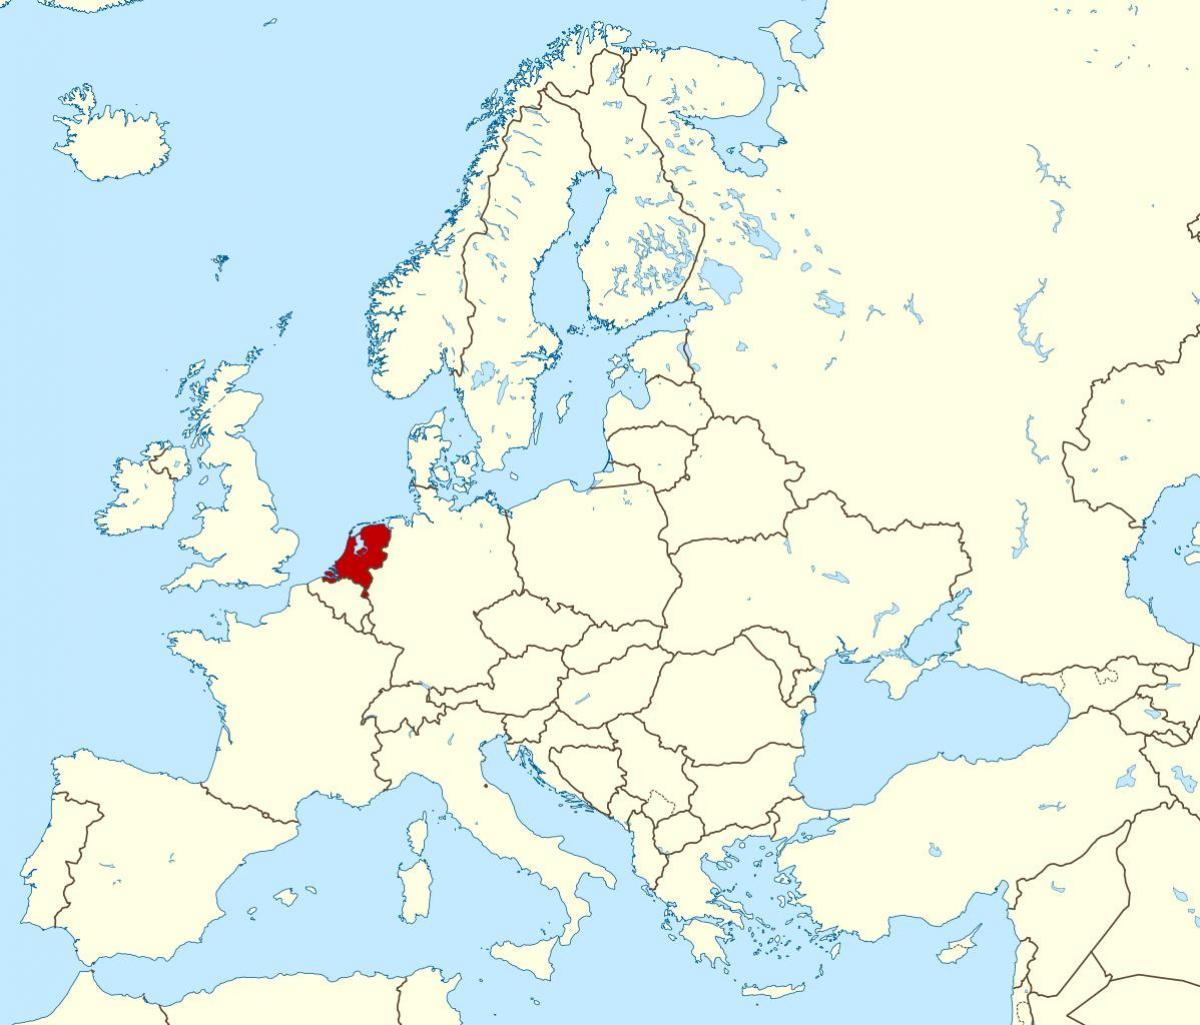 nizozemska karta europe Nizozemska karta Europe   karta Europe Nizozemska (Zapadna Europa  nizozemska karta europe